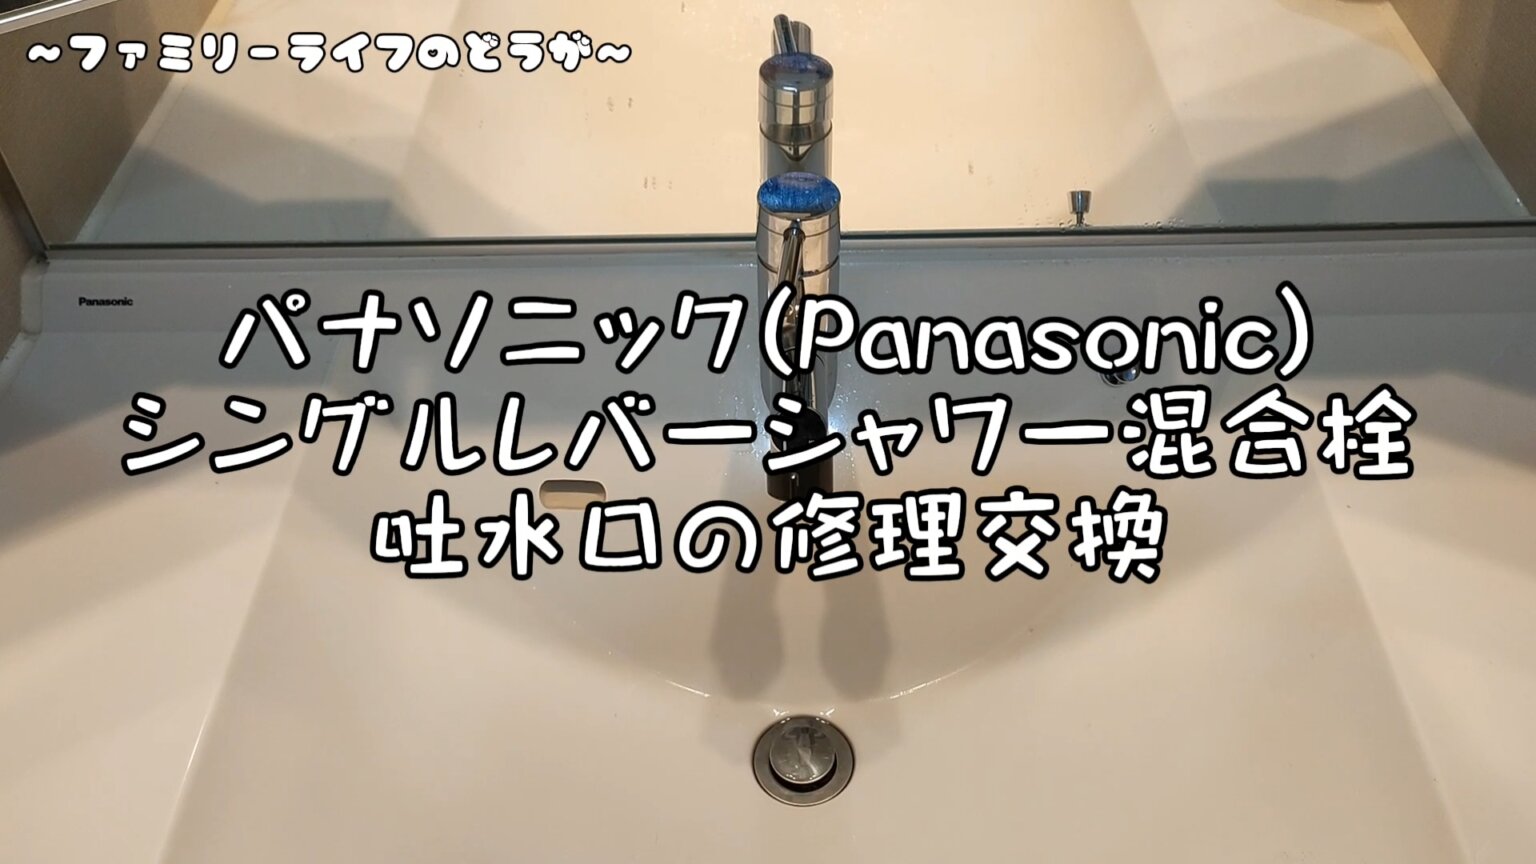 【修理方法】洗面台の吐水口を交換「パナソニックシングルレバー混合栓」【DIY】